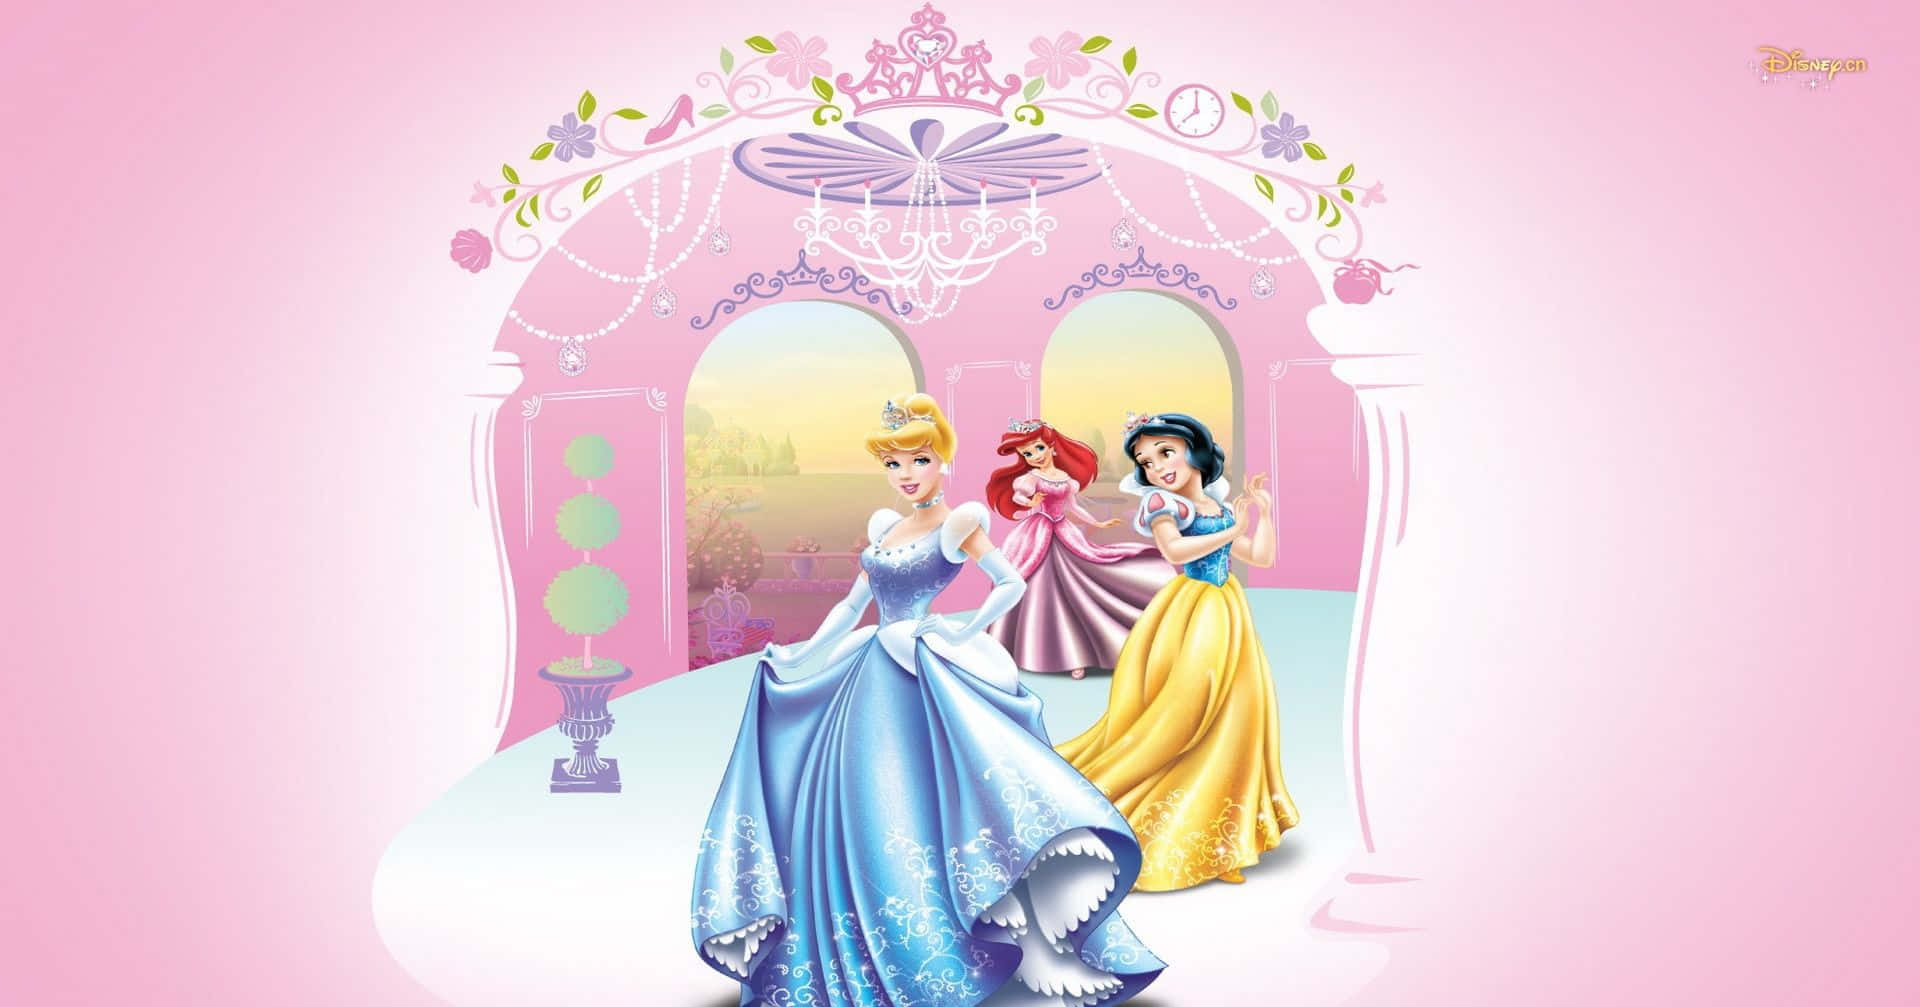 Imágenesde Las Princesas De Disney: Cenicienta, Ariel, Blancanieves.